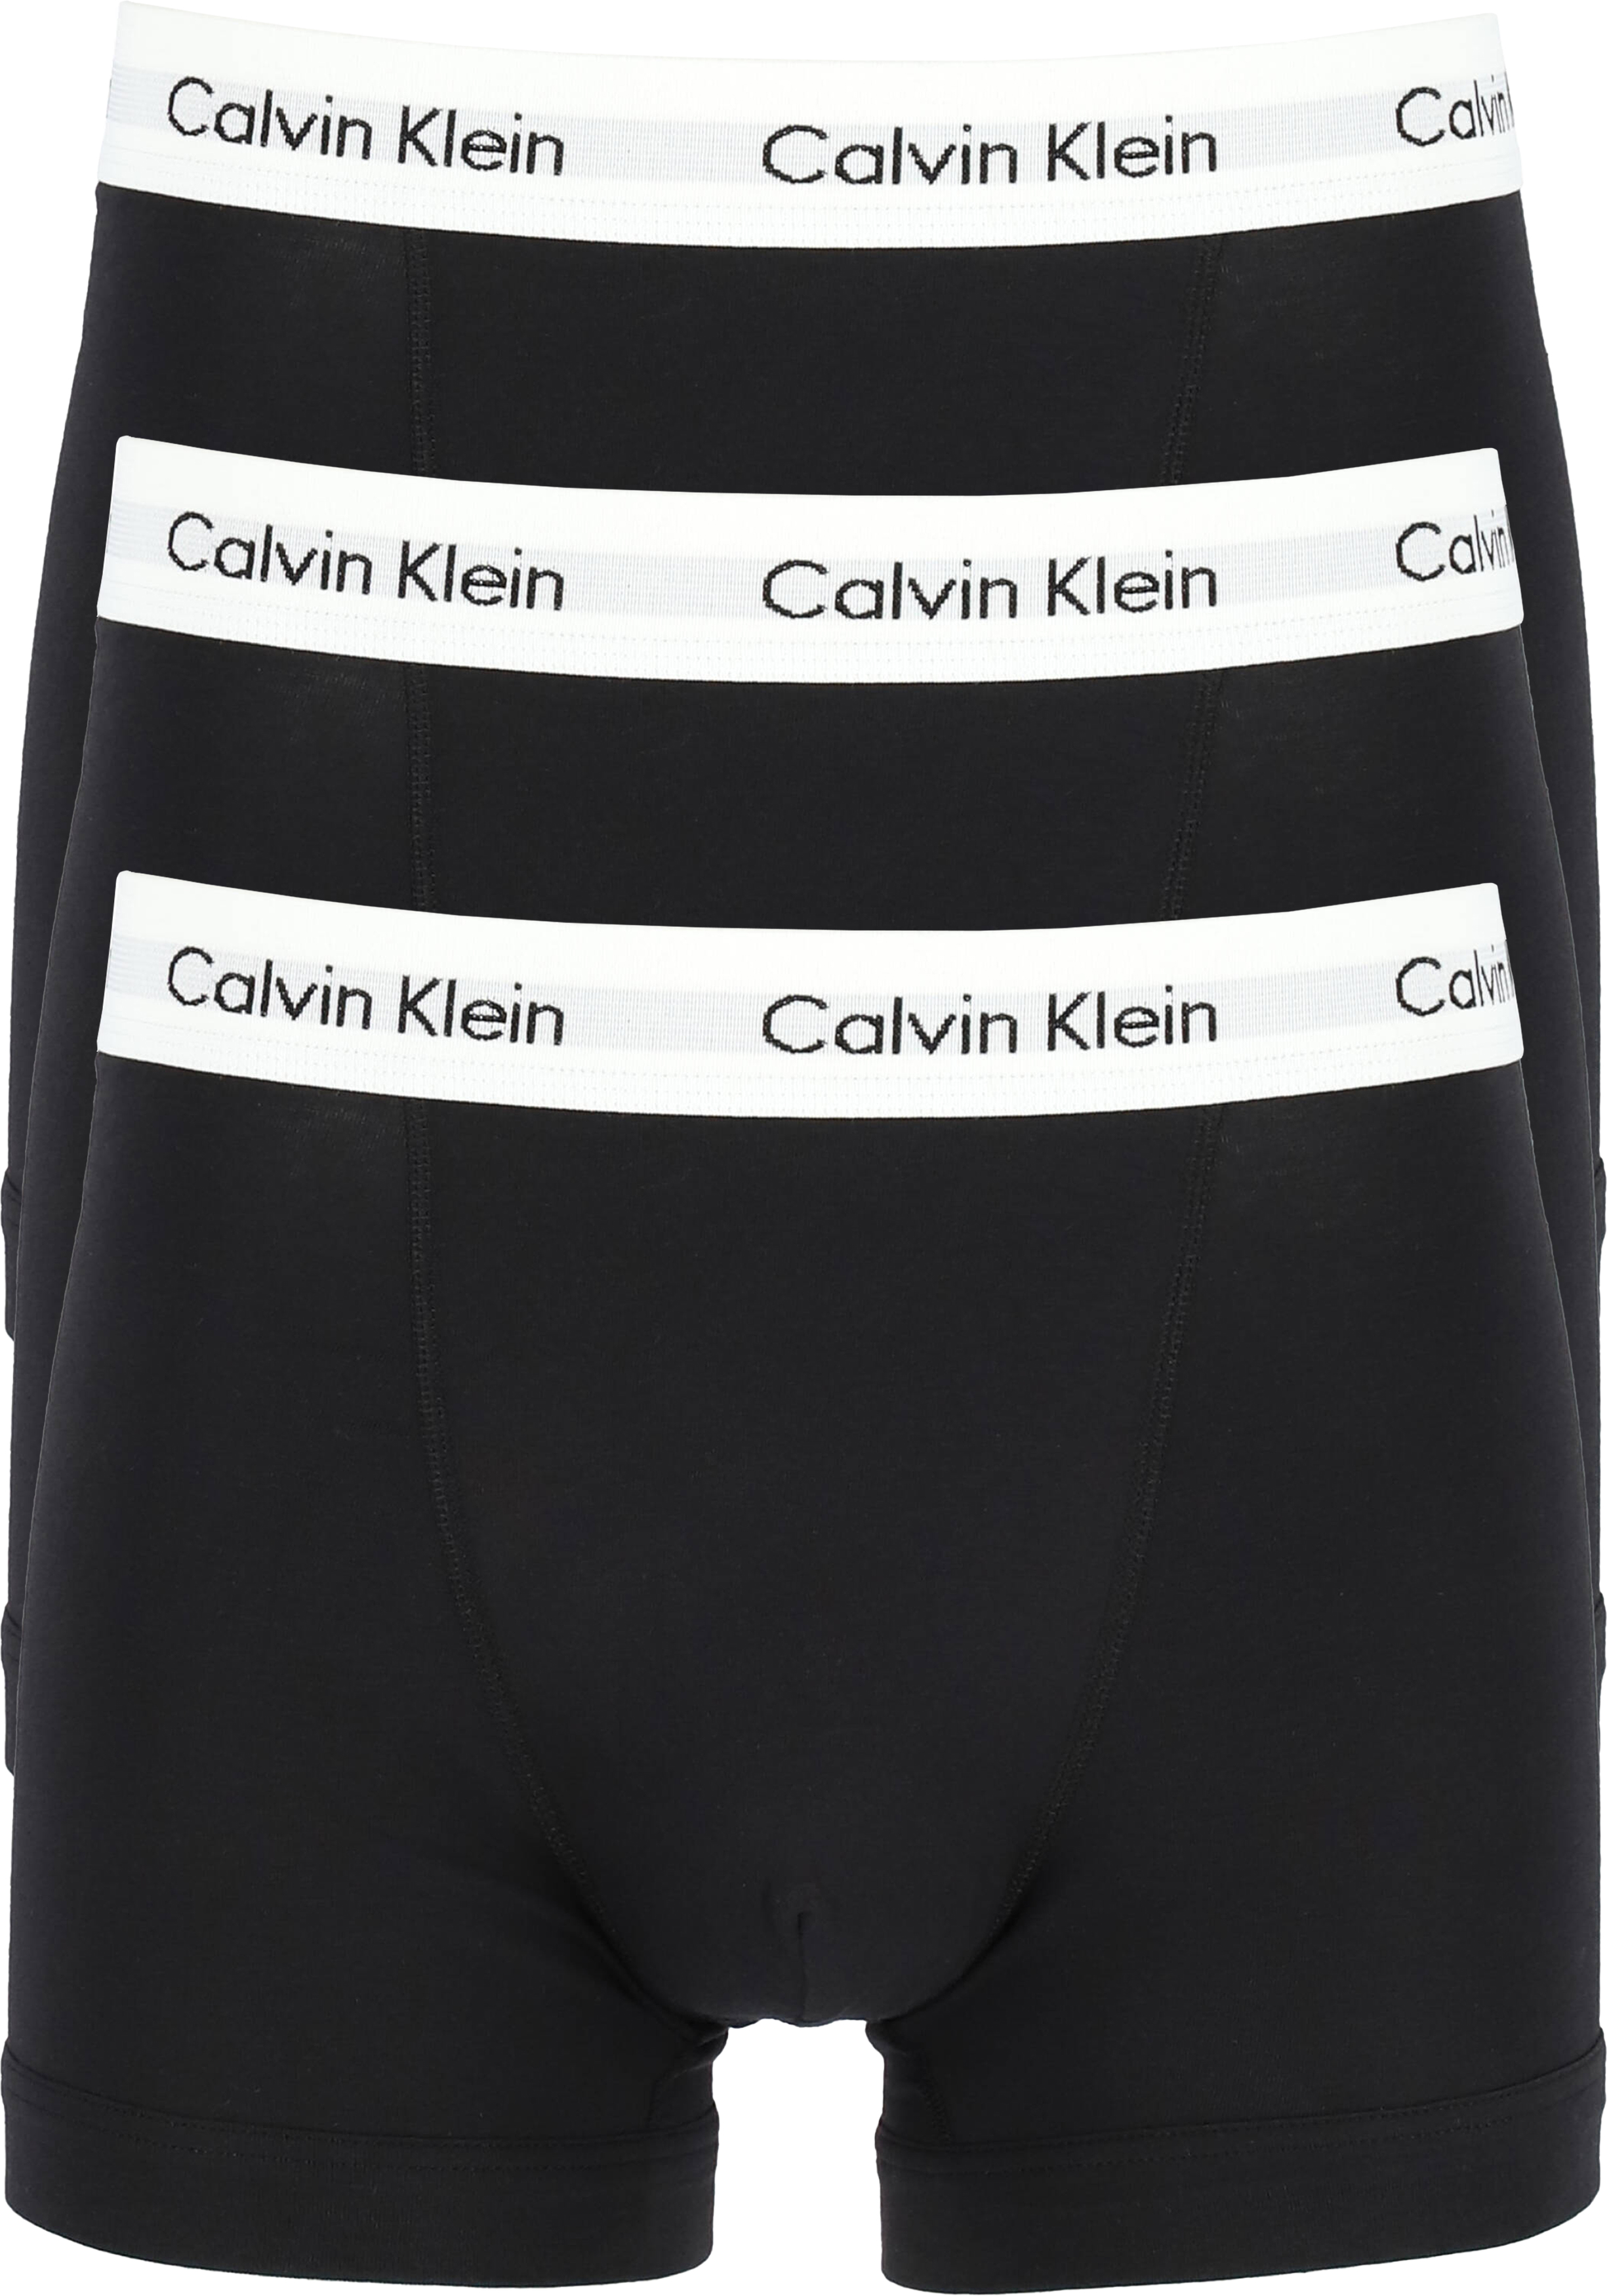 T Respect Voorlopige Calvin Klein Trunks (3-pack), zwart - Gratis bezorgd